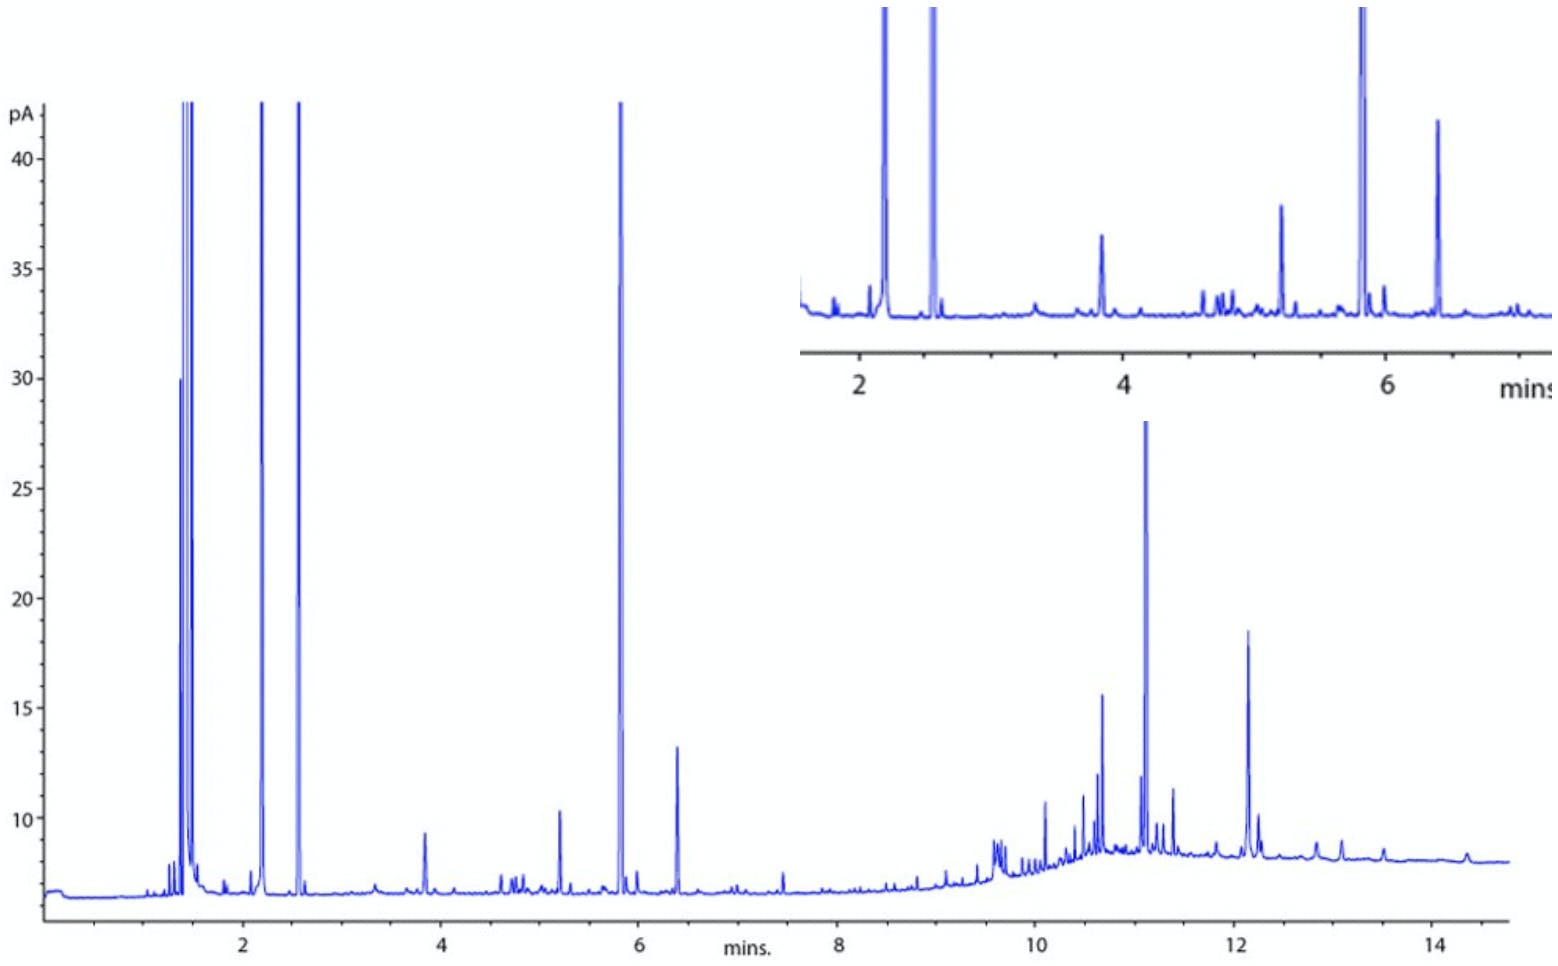 GC chromatogram showing baseline spikes